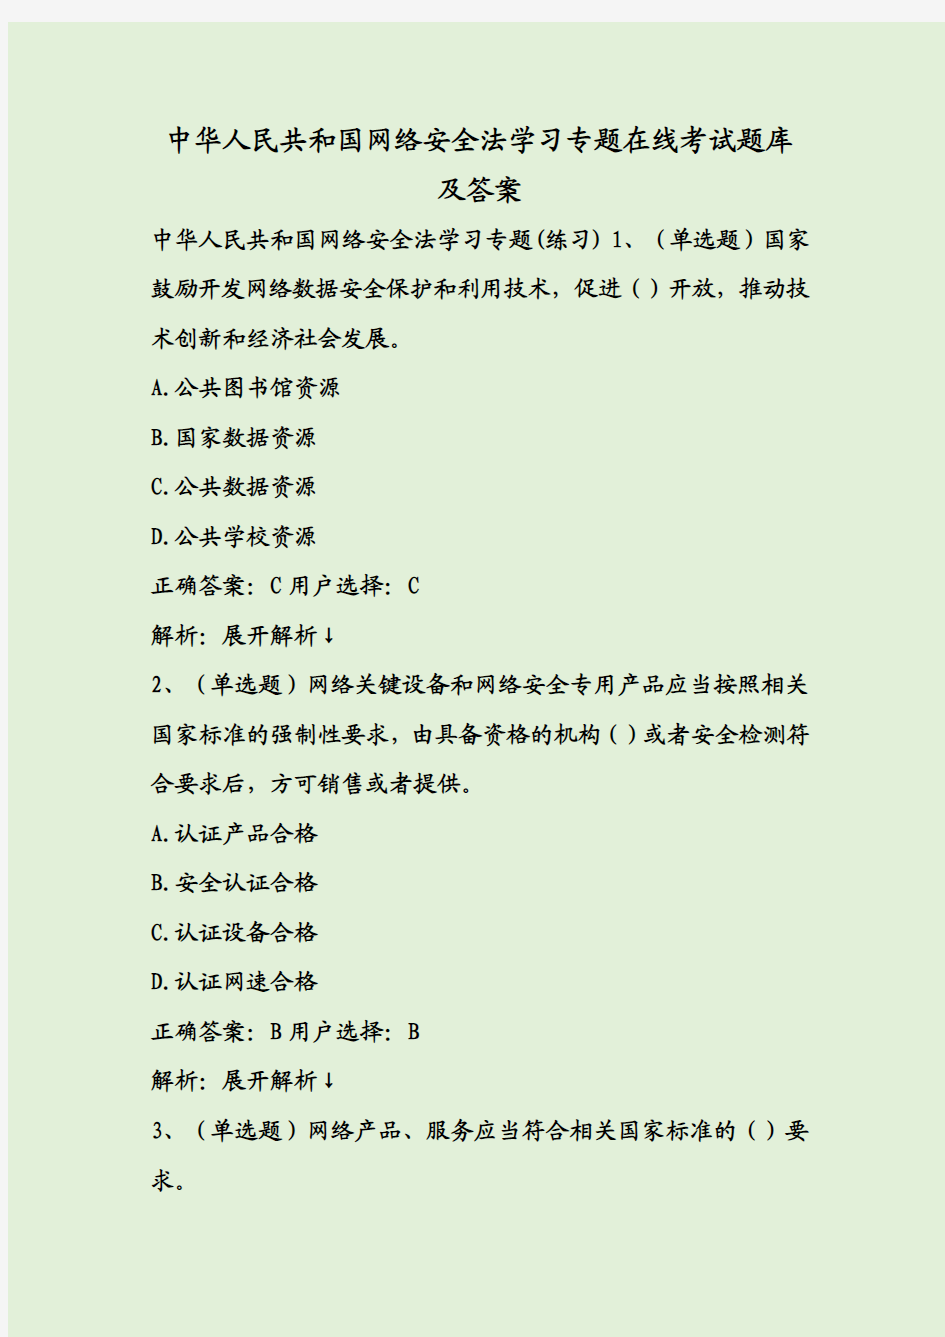 中华人民共和国网络安全法学习专题在线考试题库及答案